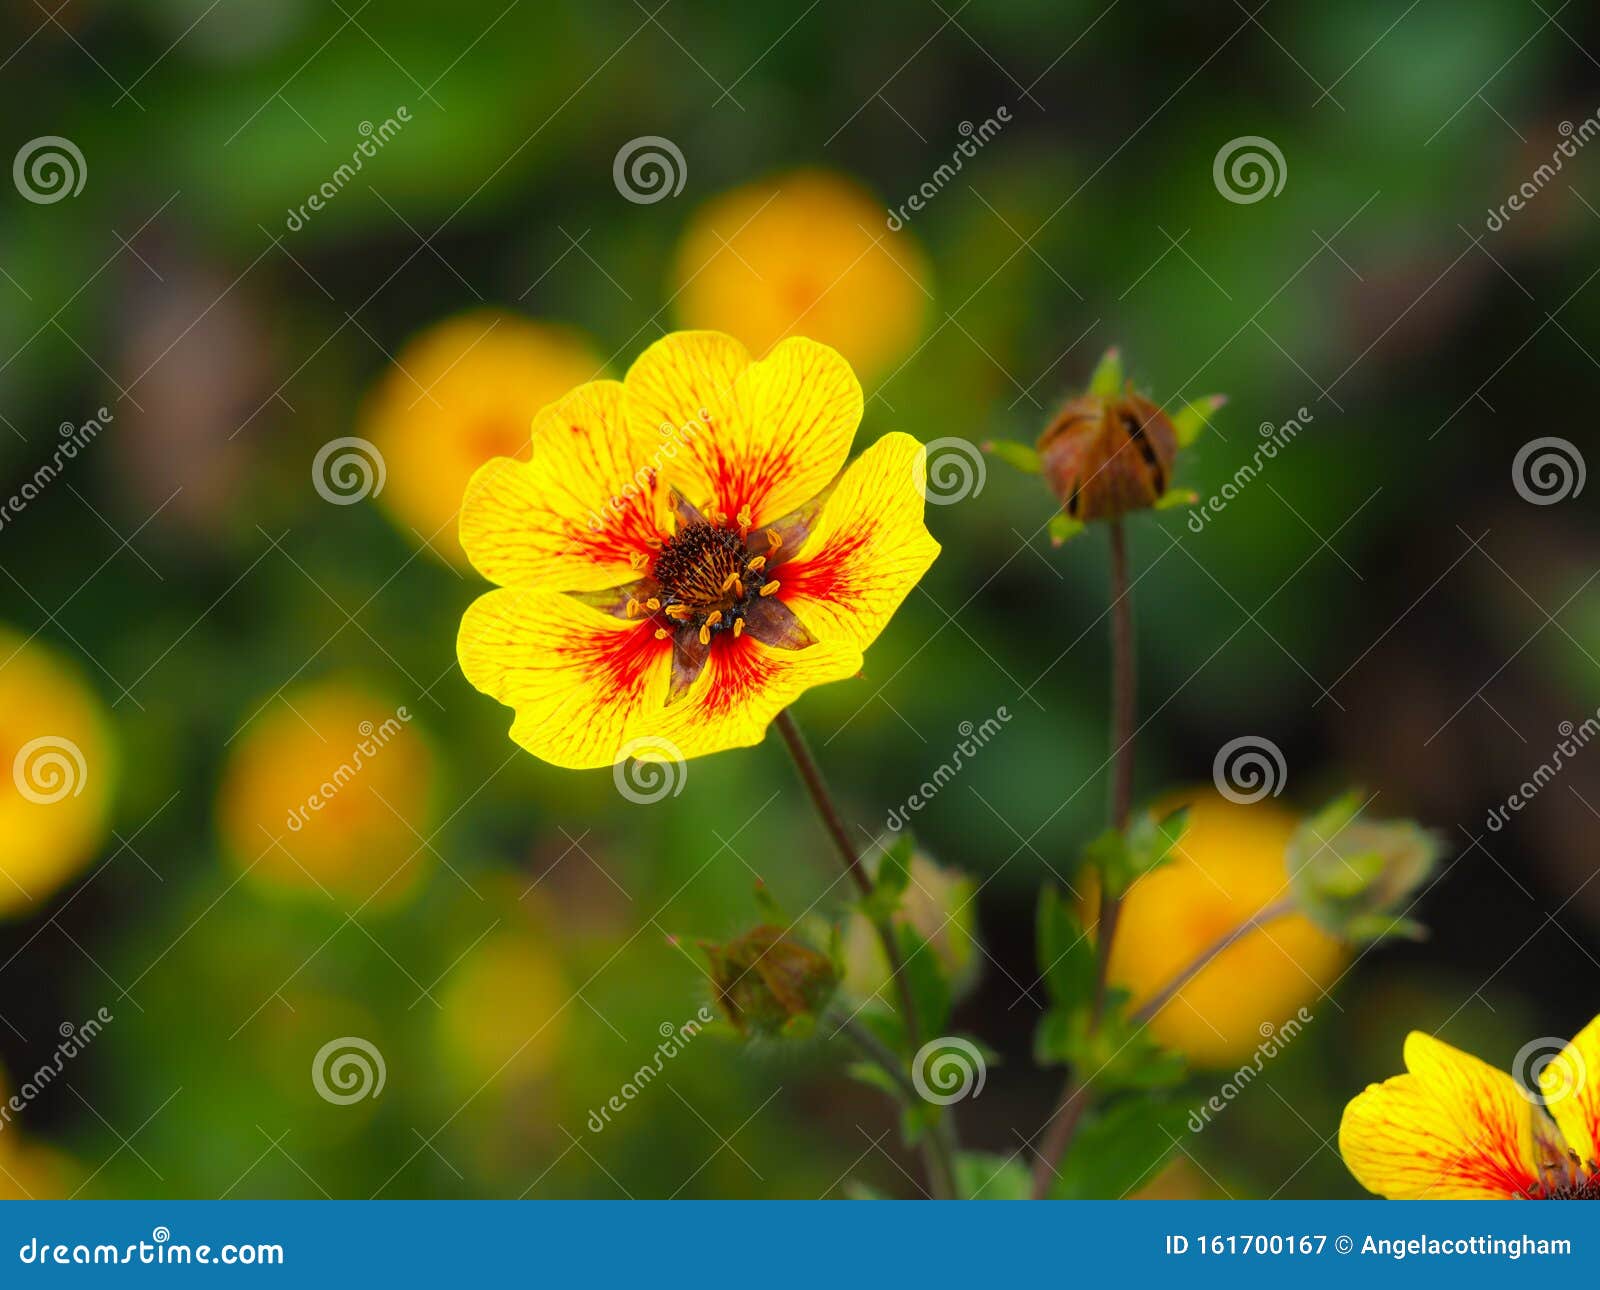 potentilla `esta ann` flower and buds